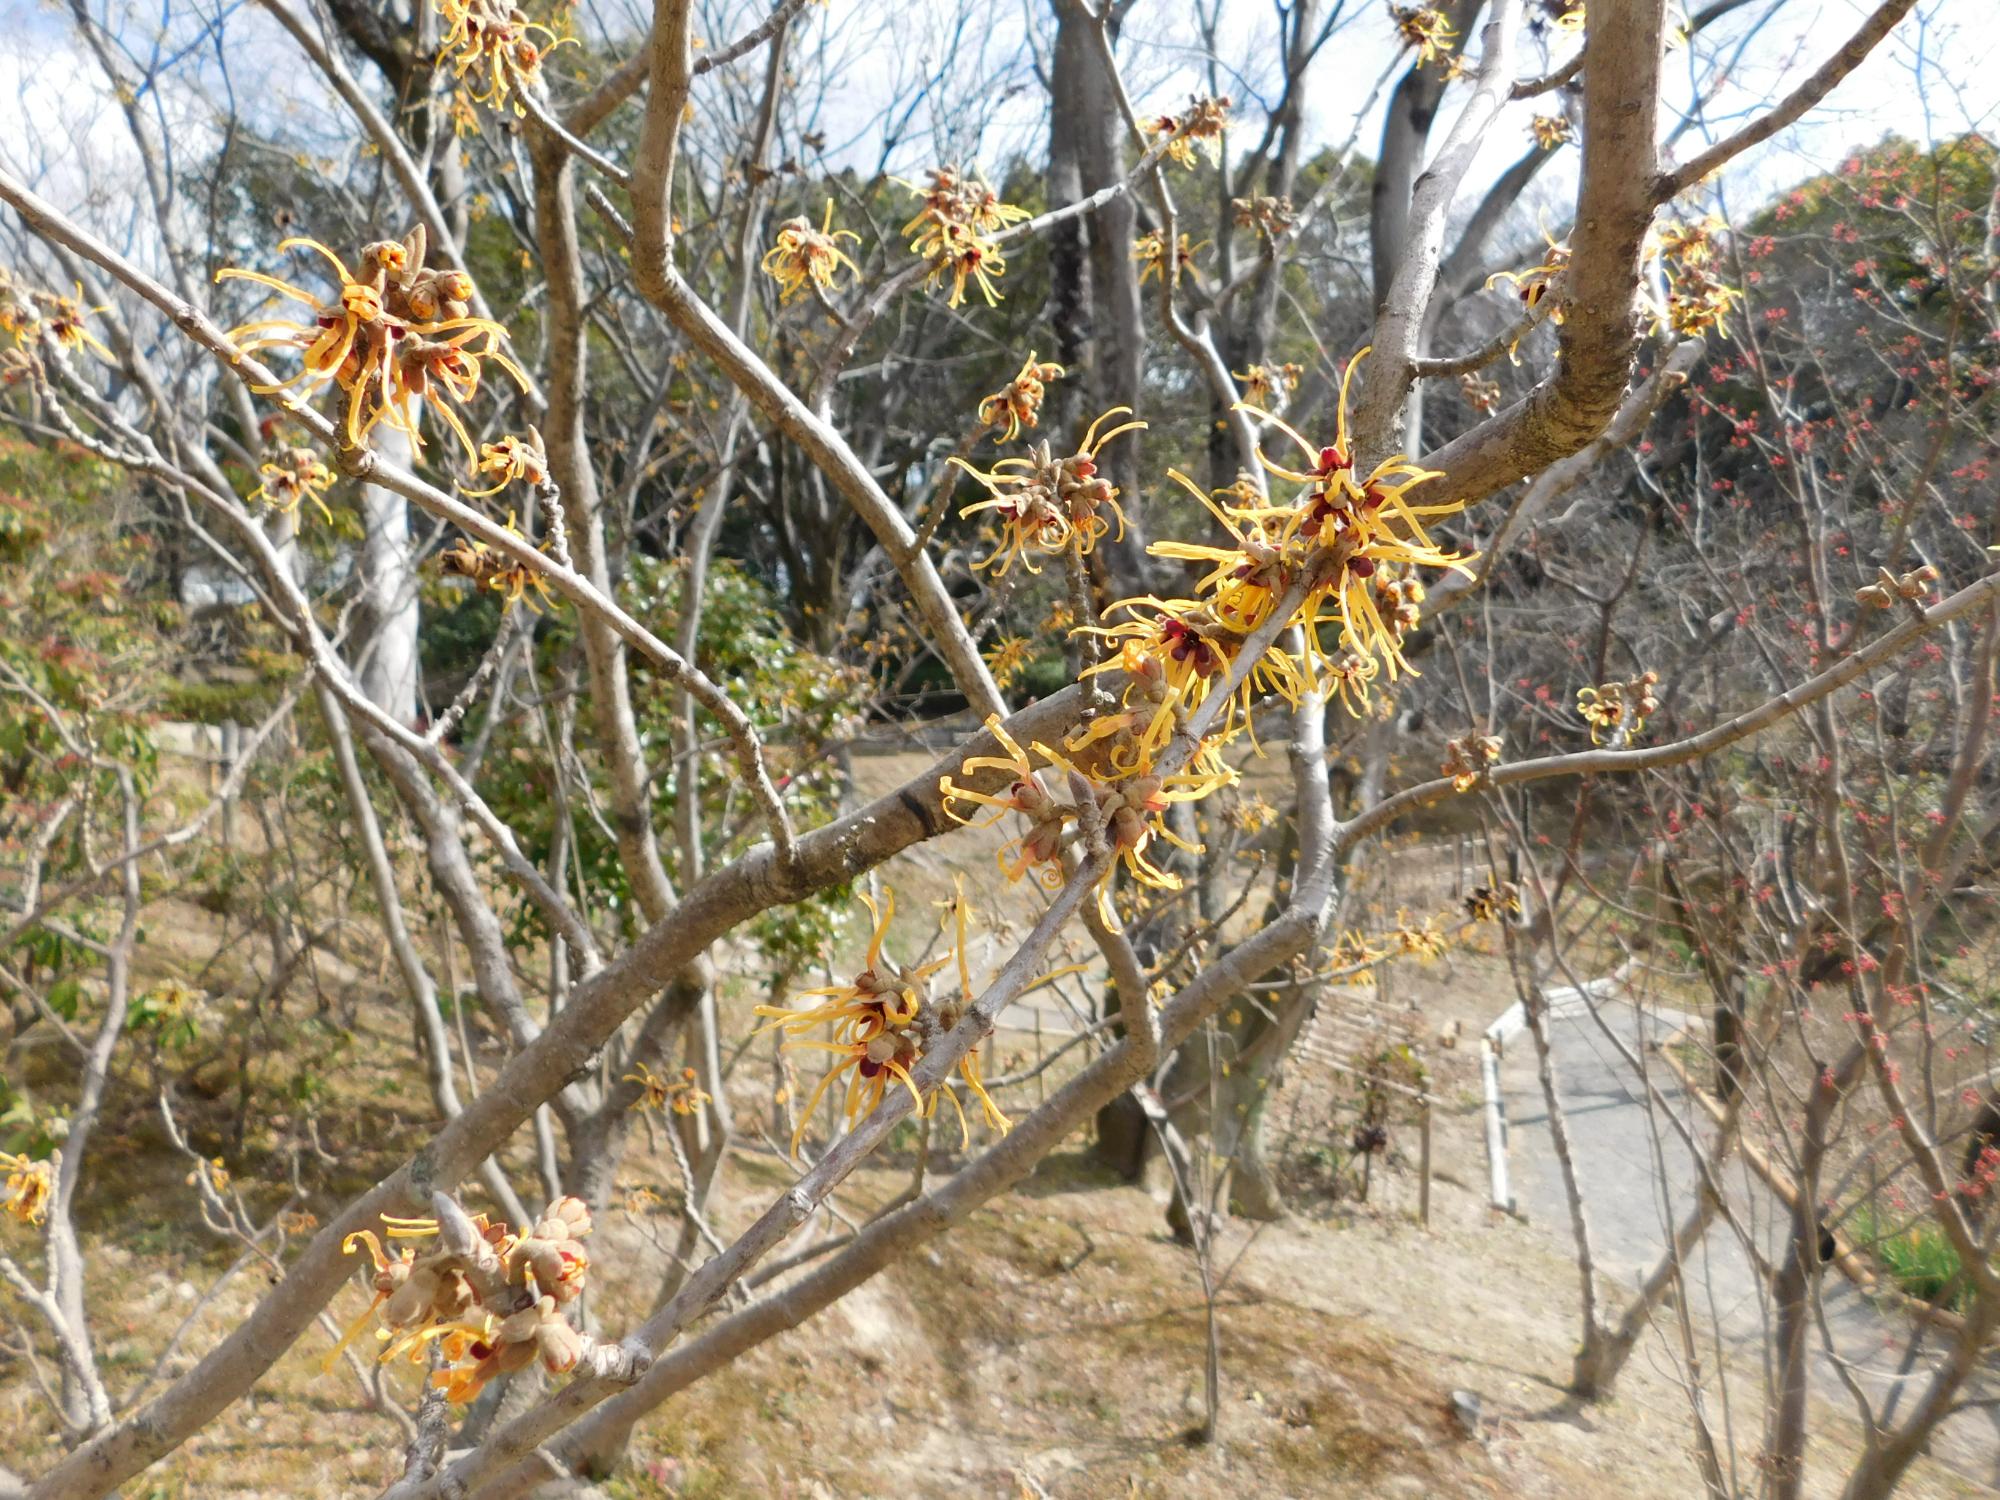 薬草園の中段にあるマンサクの木に黄色い花が咲きました。落葉期に咲くため花がよく目立ちます。